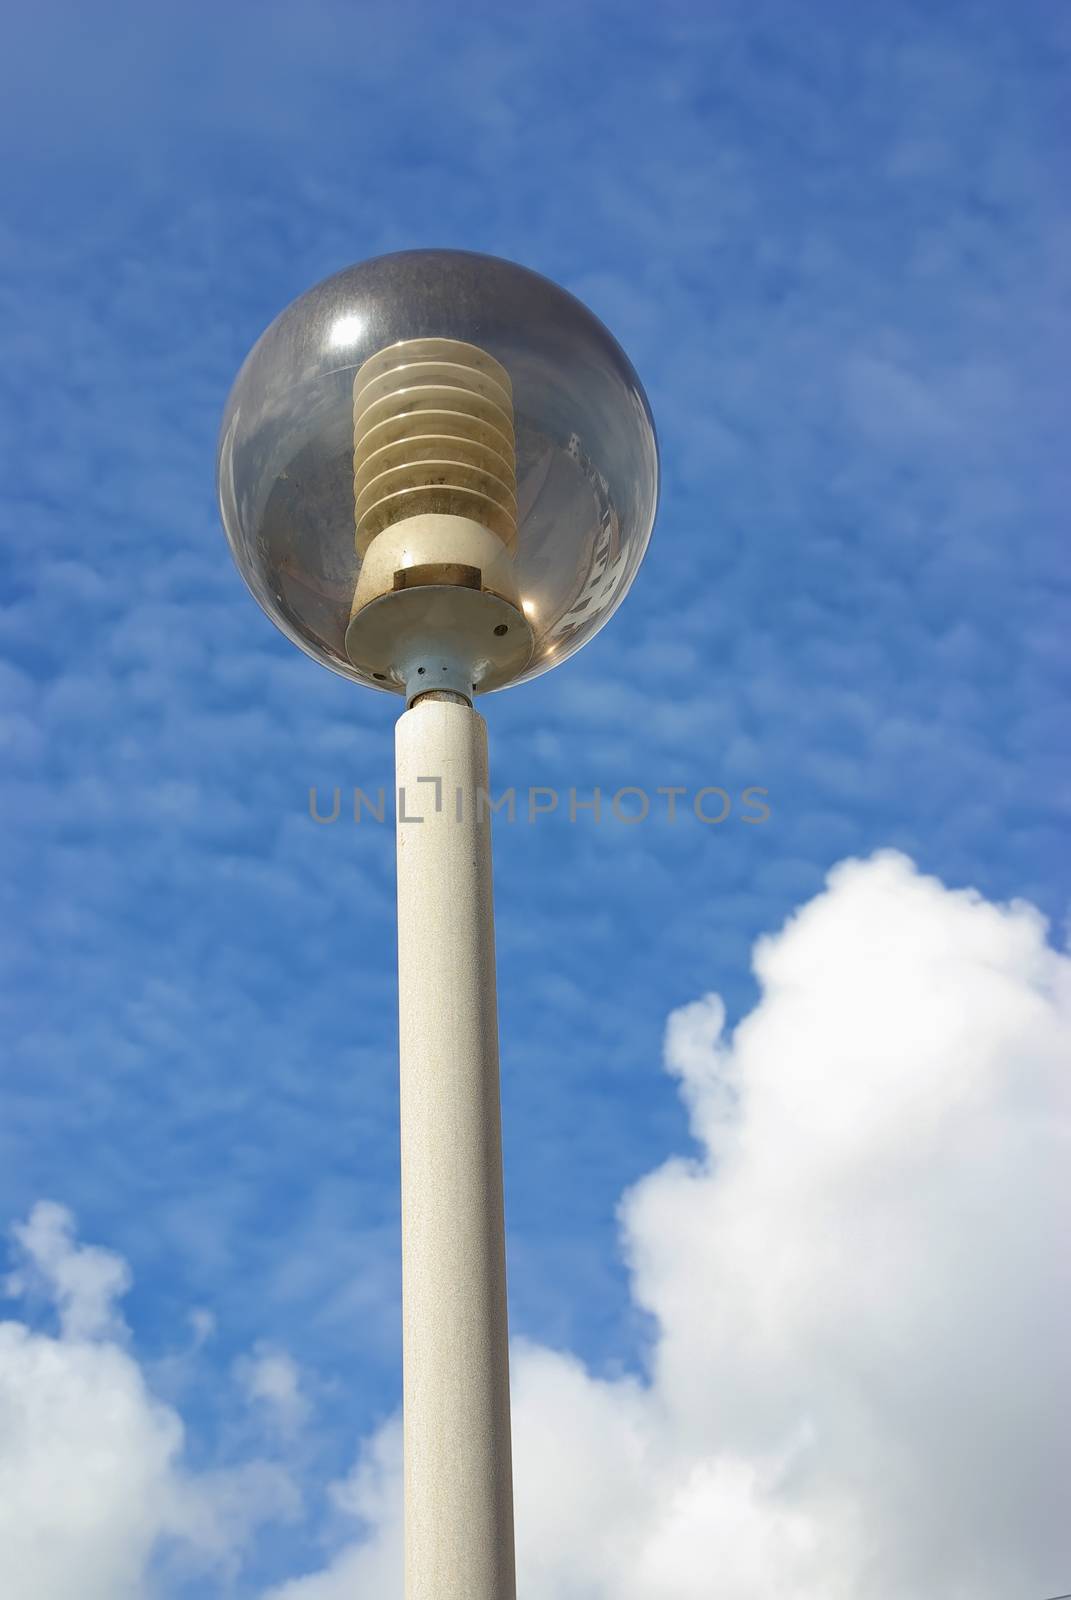 Street Lamp by JCVSTOCK